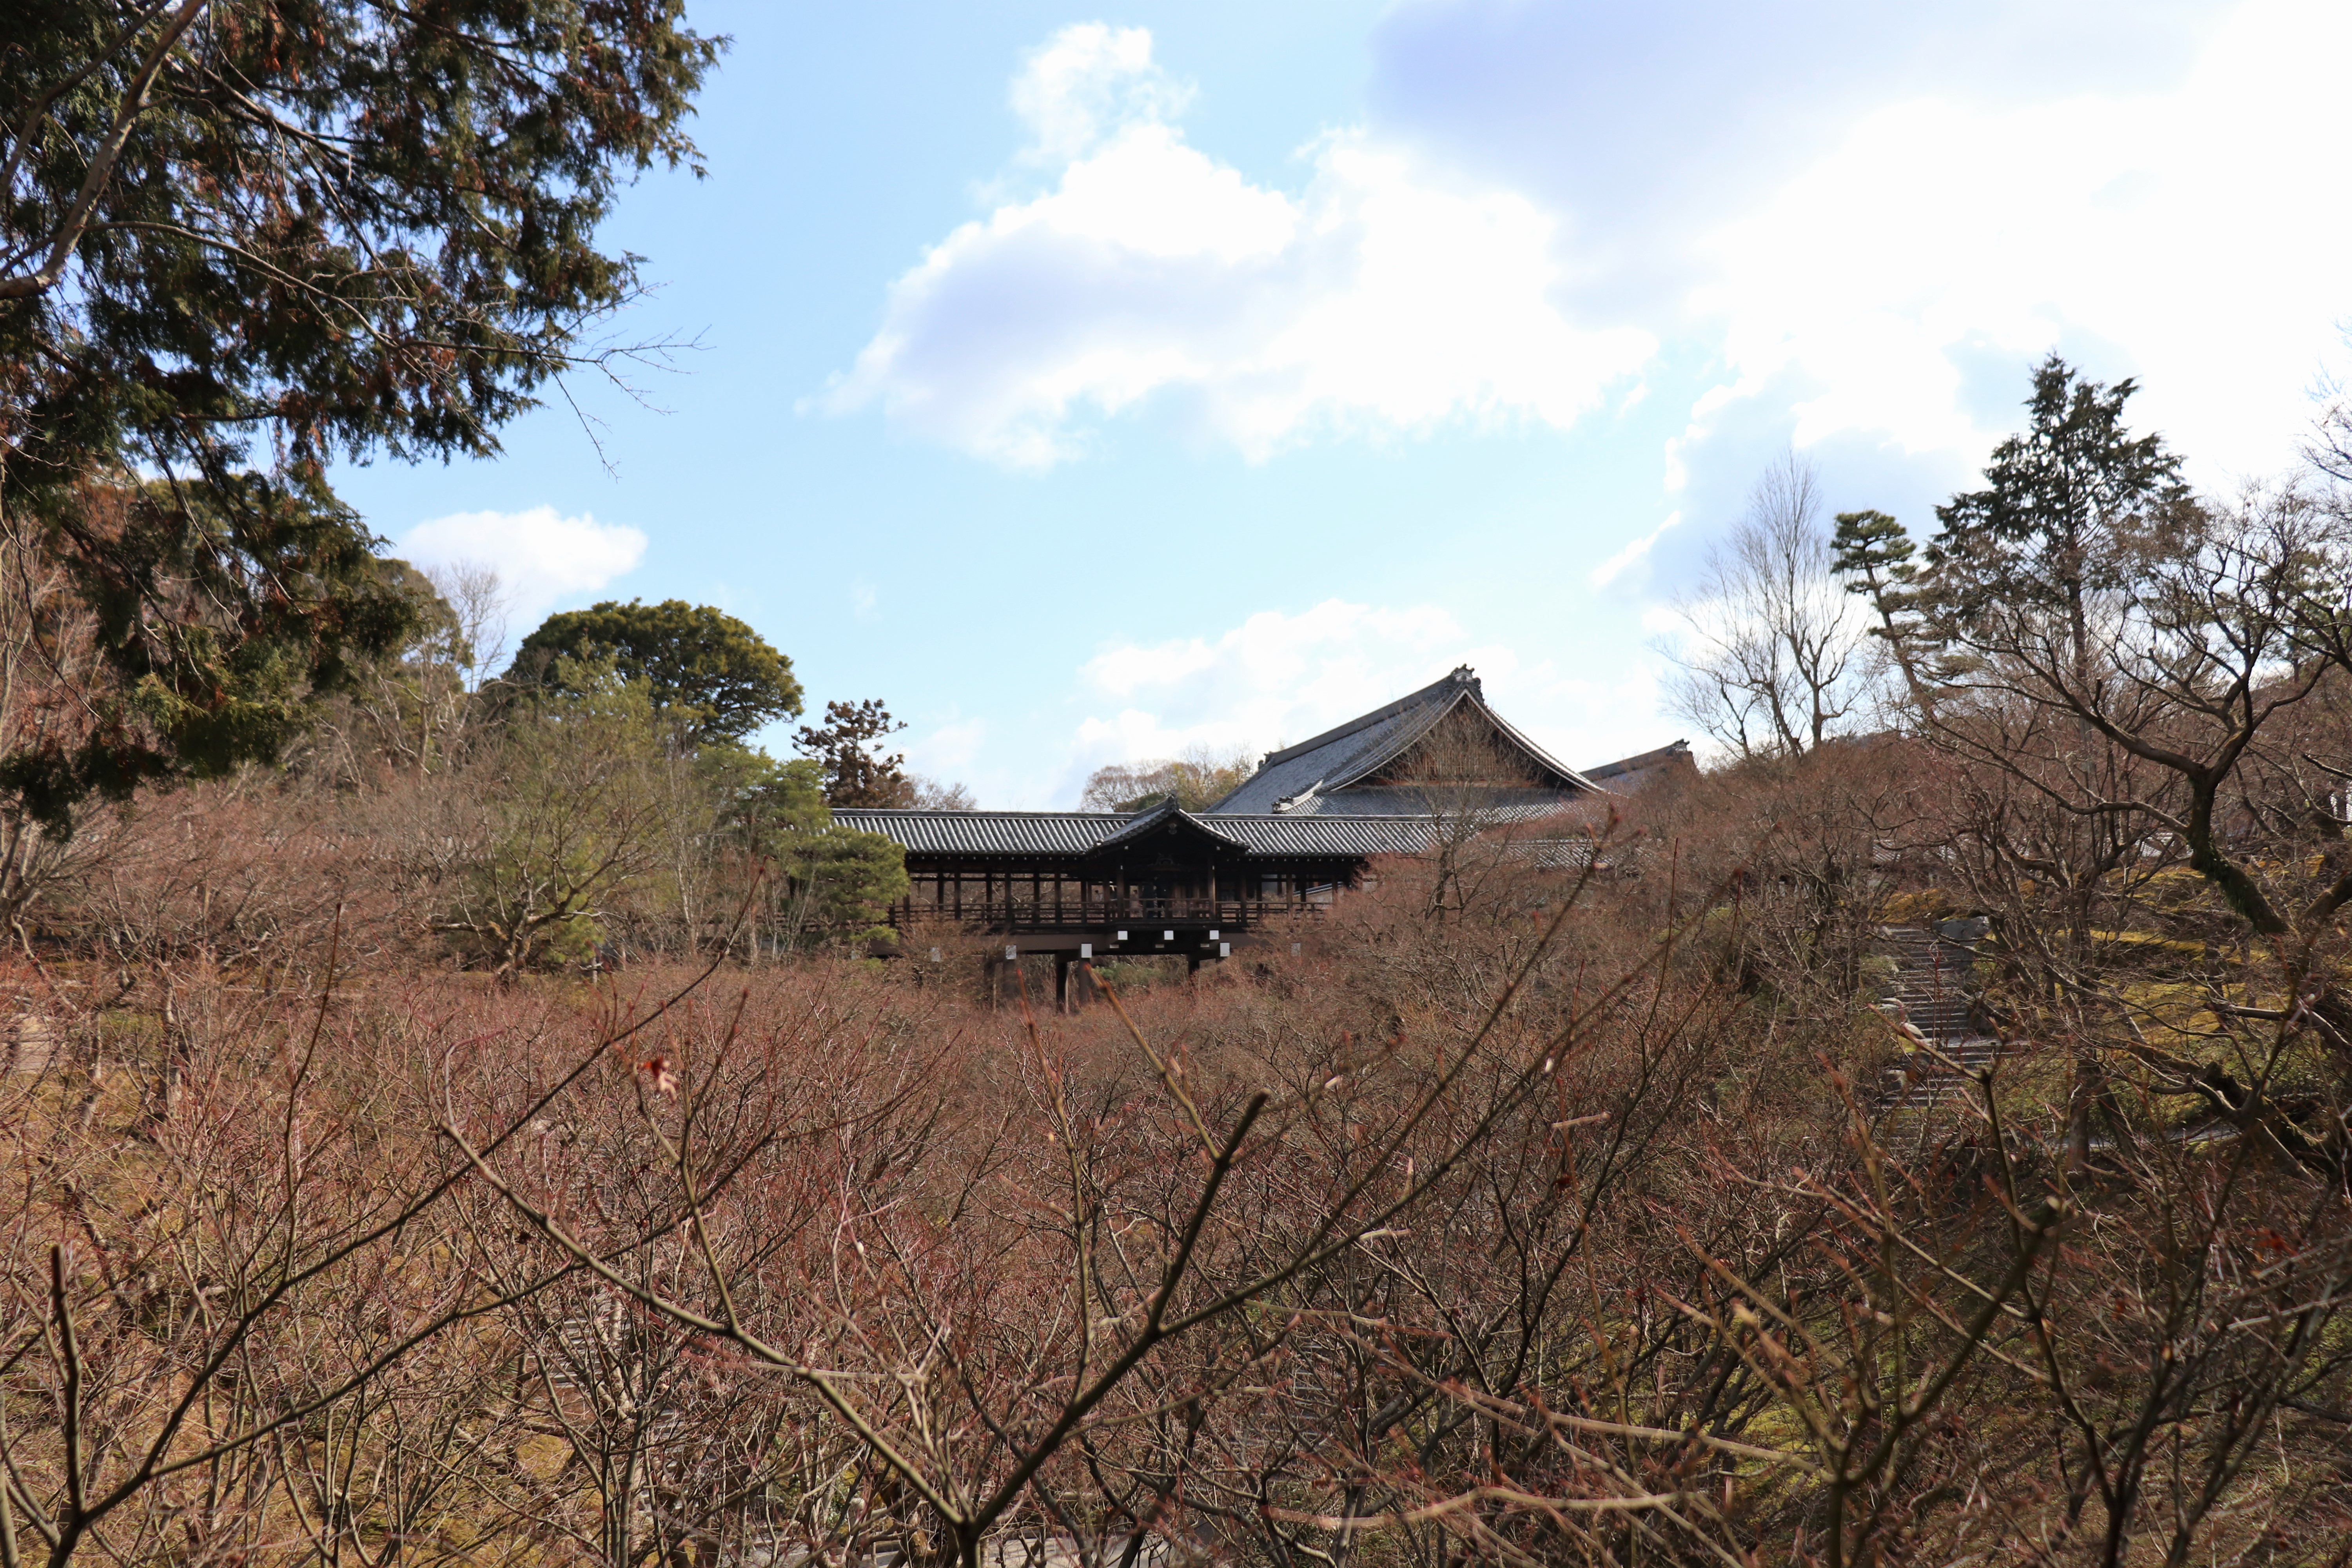 Tusten-kyo Bridge of Tofuku-ji 